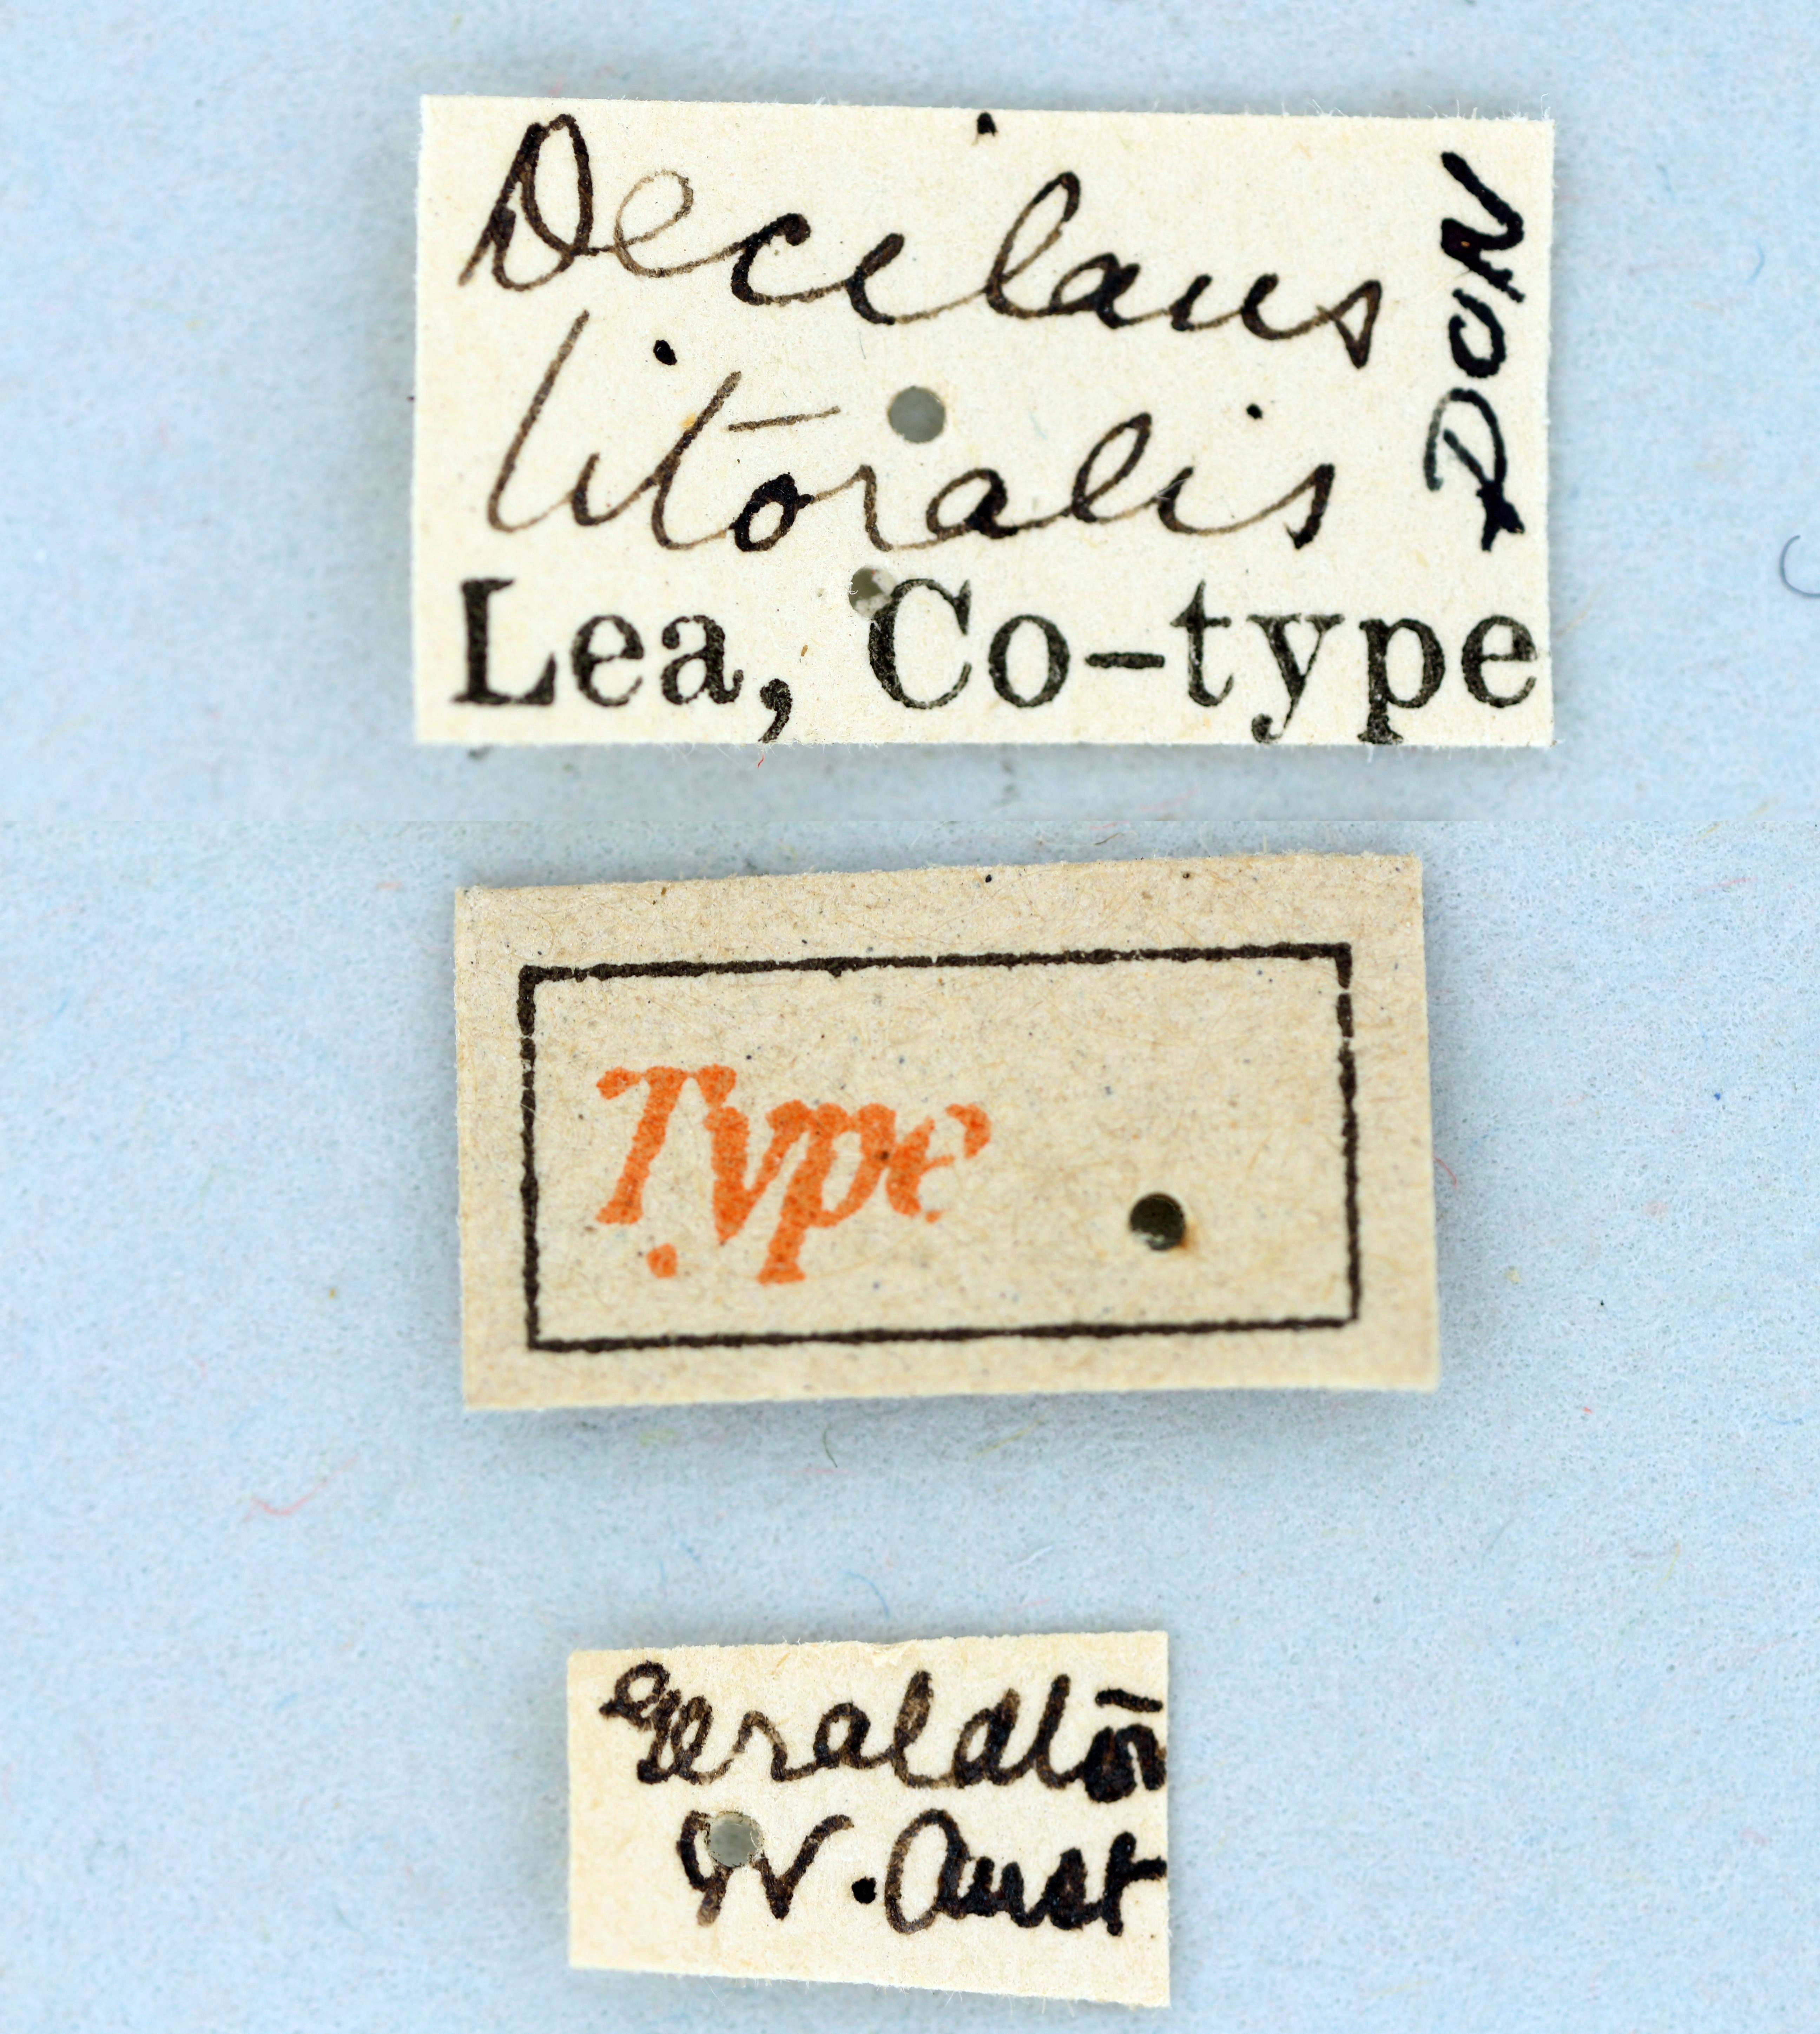 Decilaus littoralis Ht labels